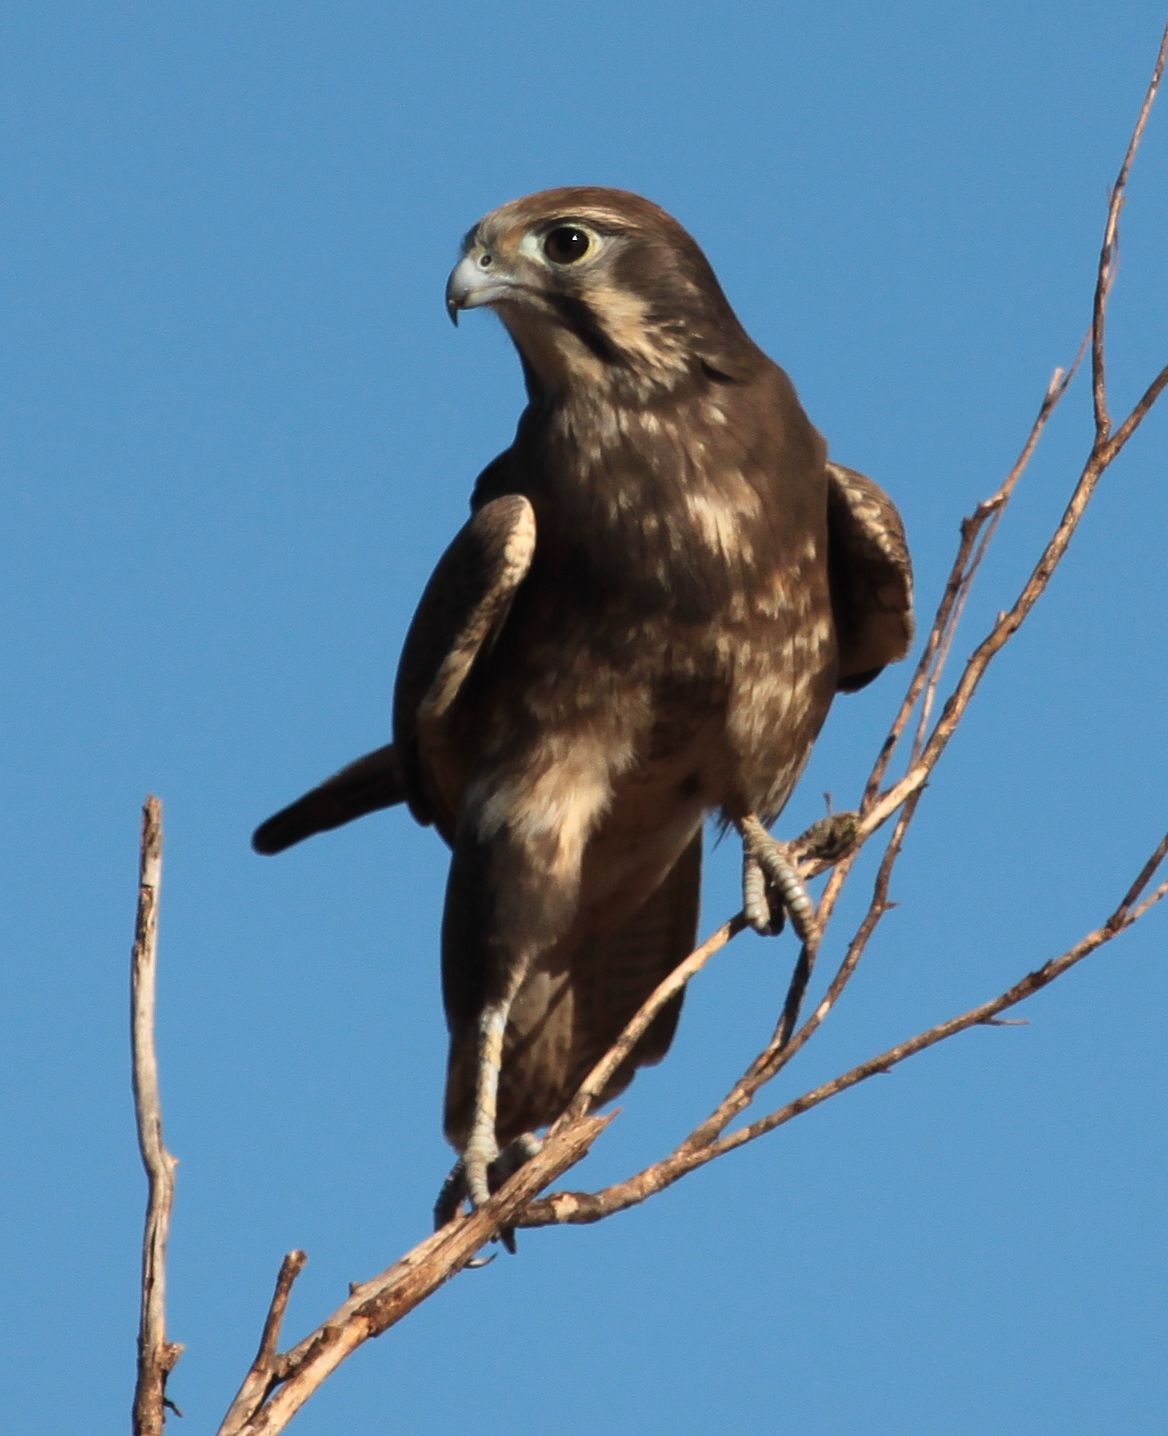 Pretty Brown falcon